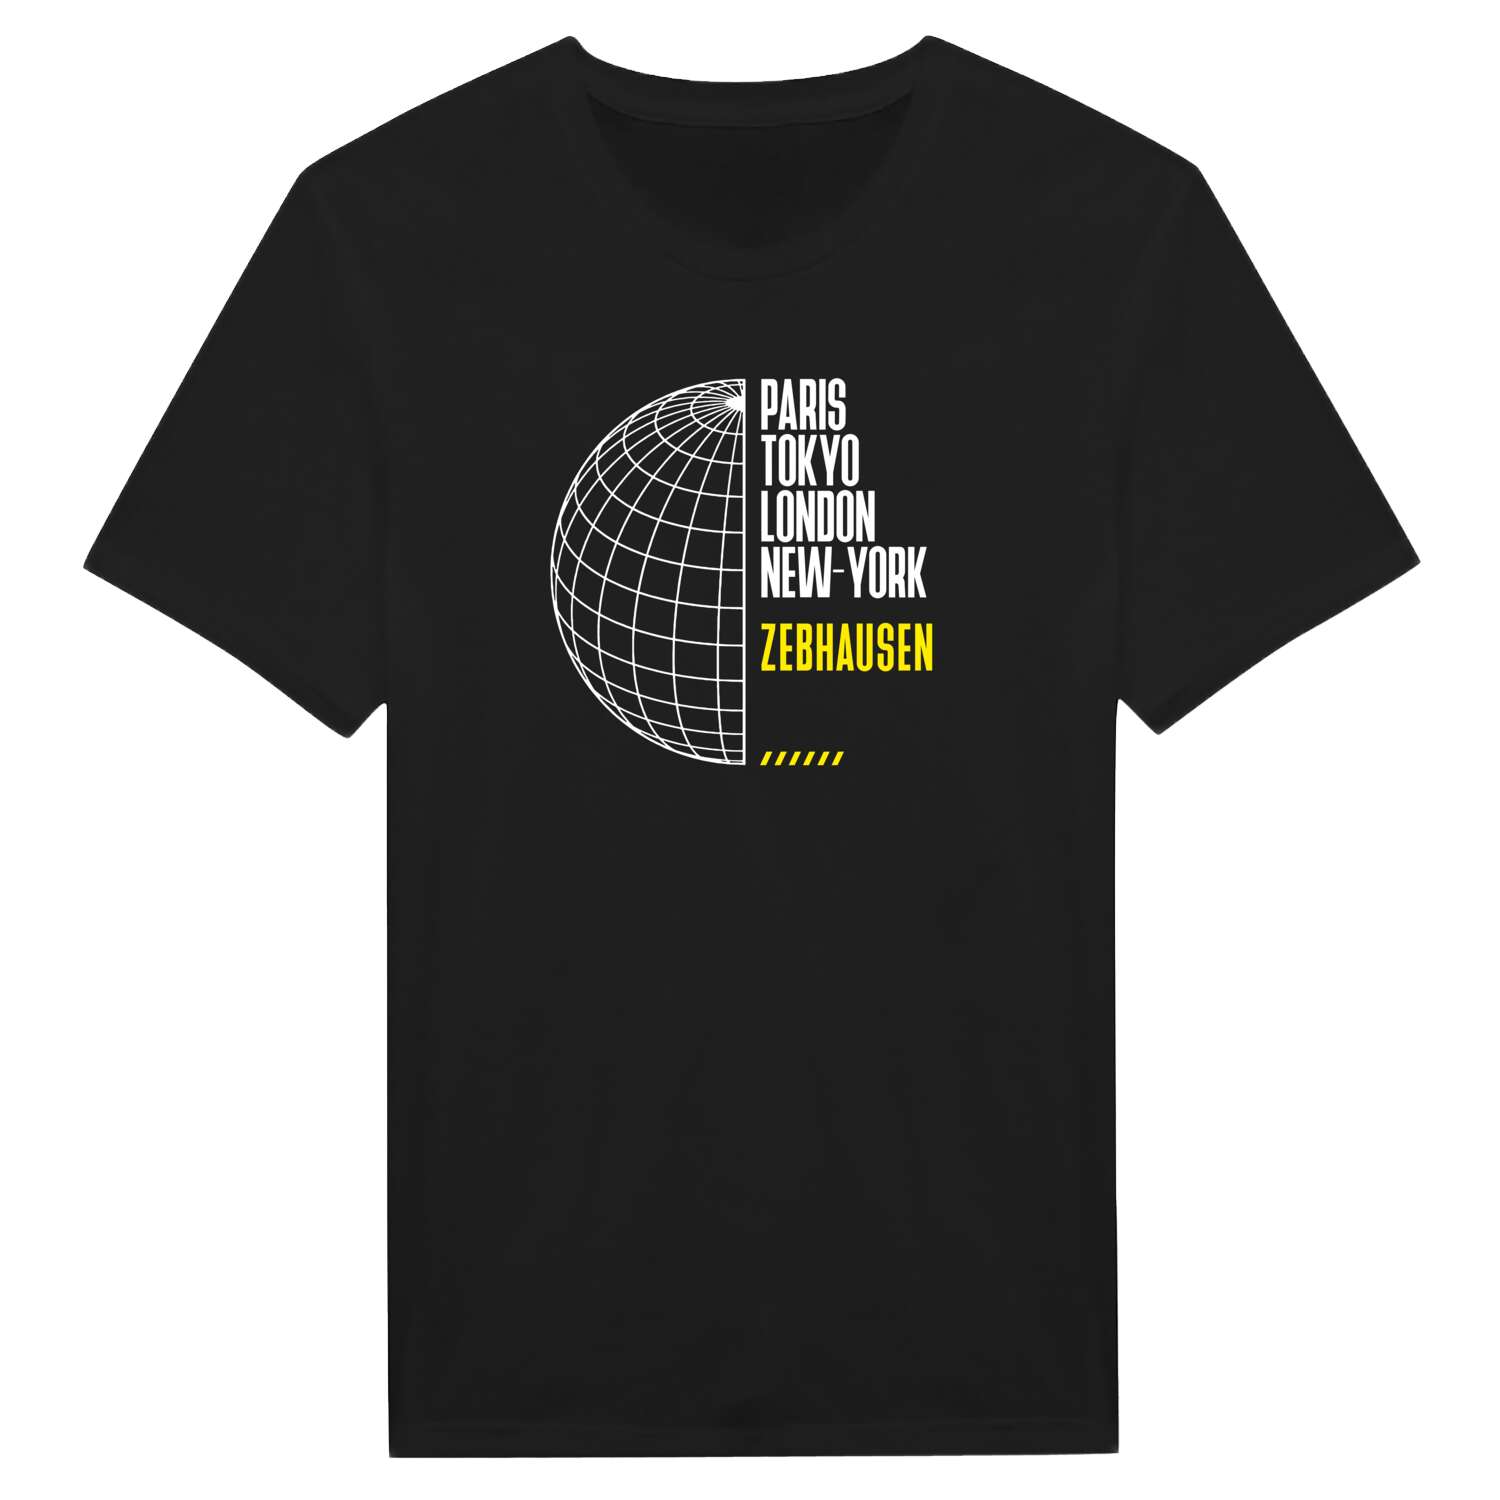 Zebhausen T-Shirt »Paris Tokyo London«